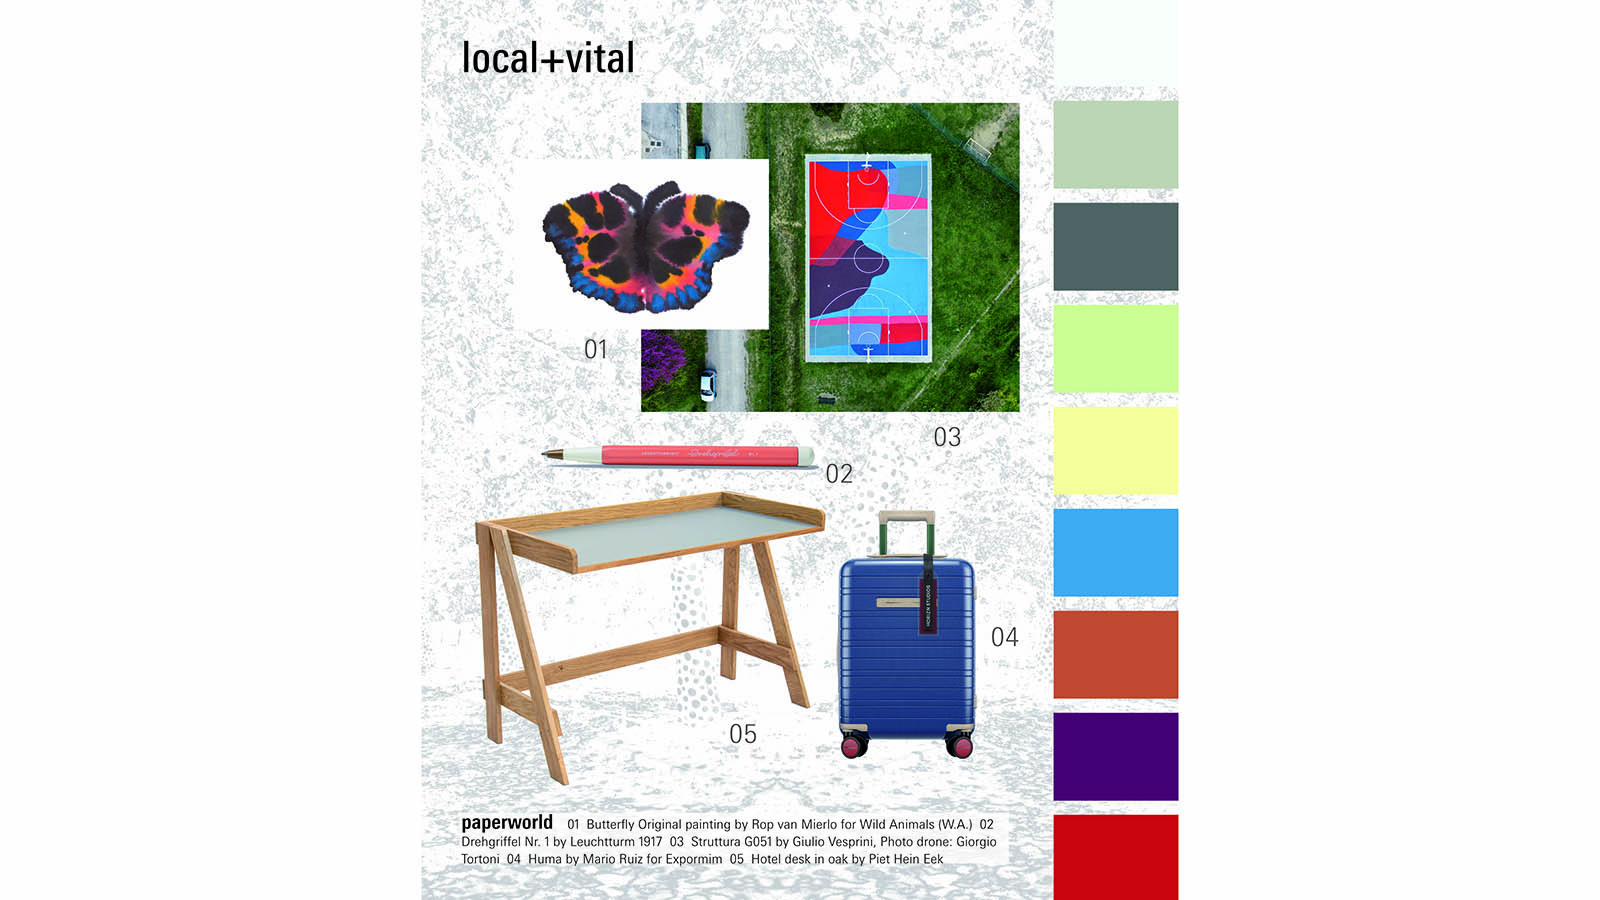 local+vital: Nähe und Fröhlichkeit durch lokale Produkte und charakteristisches Design